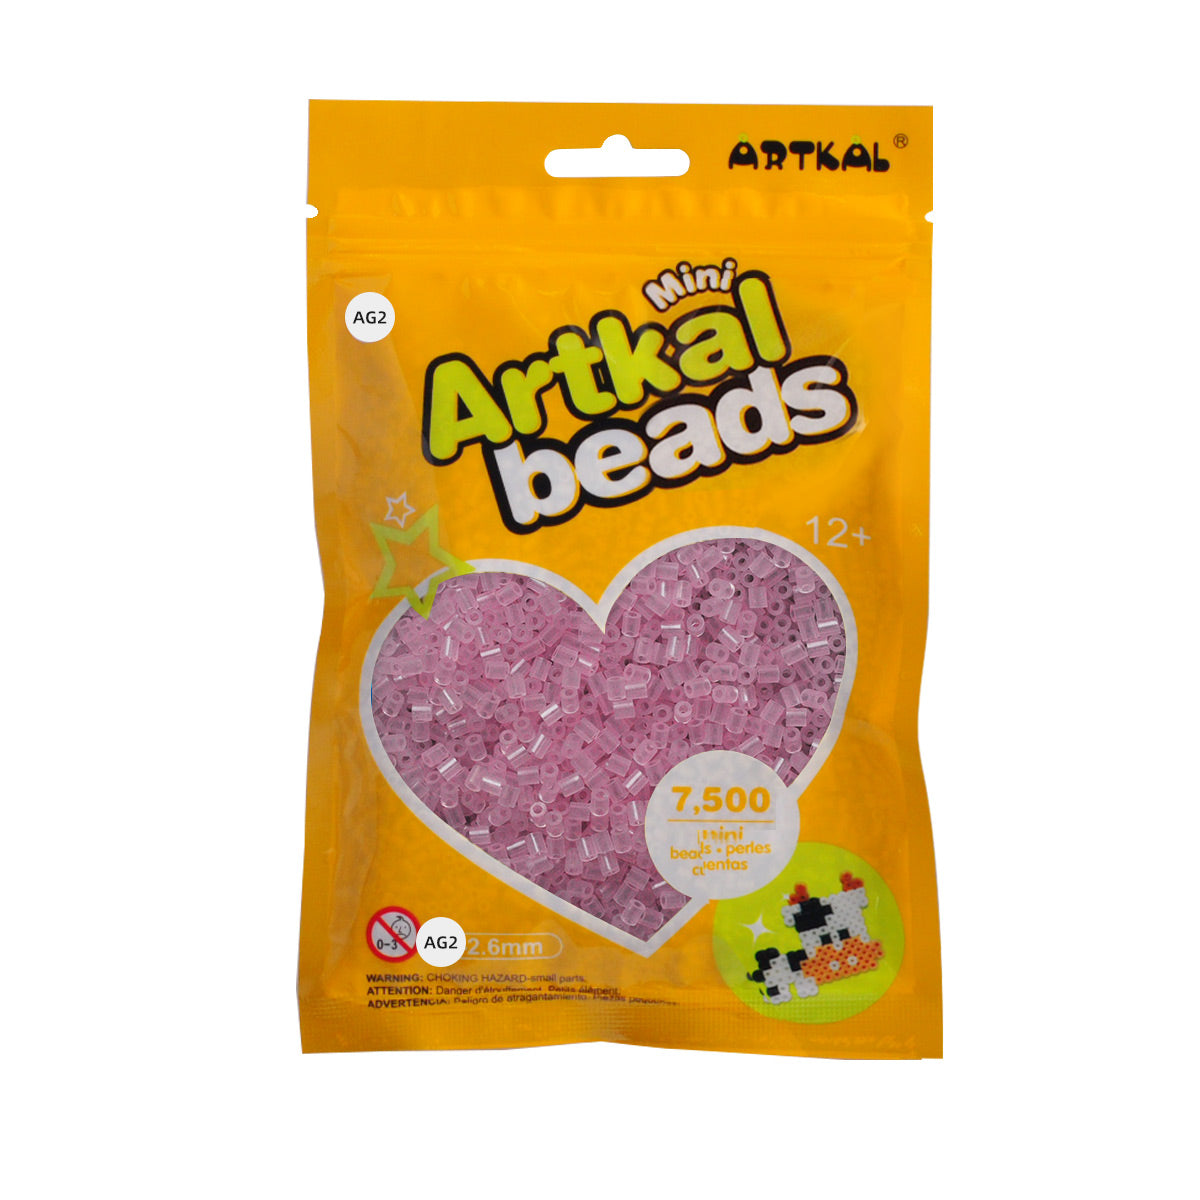 (AG1-AG7) A-2.6mm 7500P single pack mini artkal beads